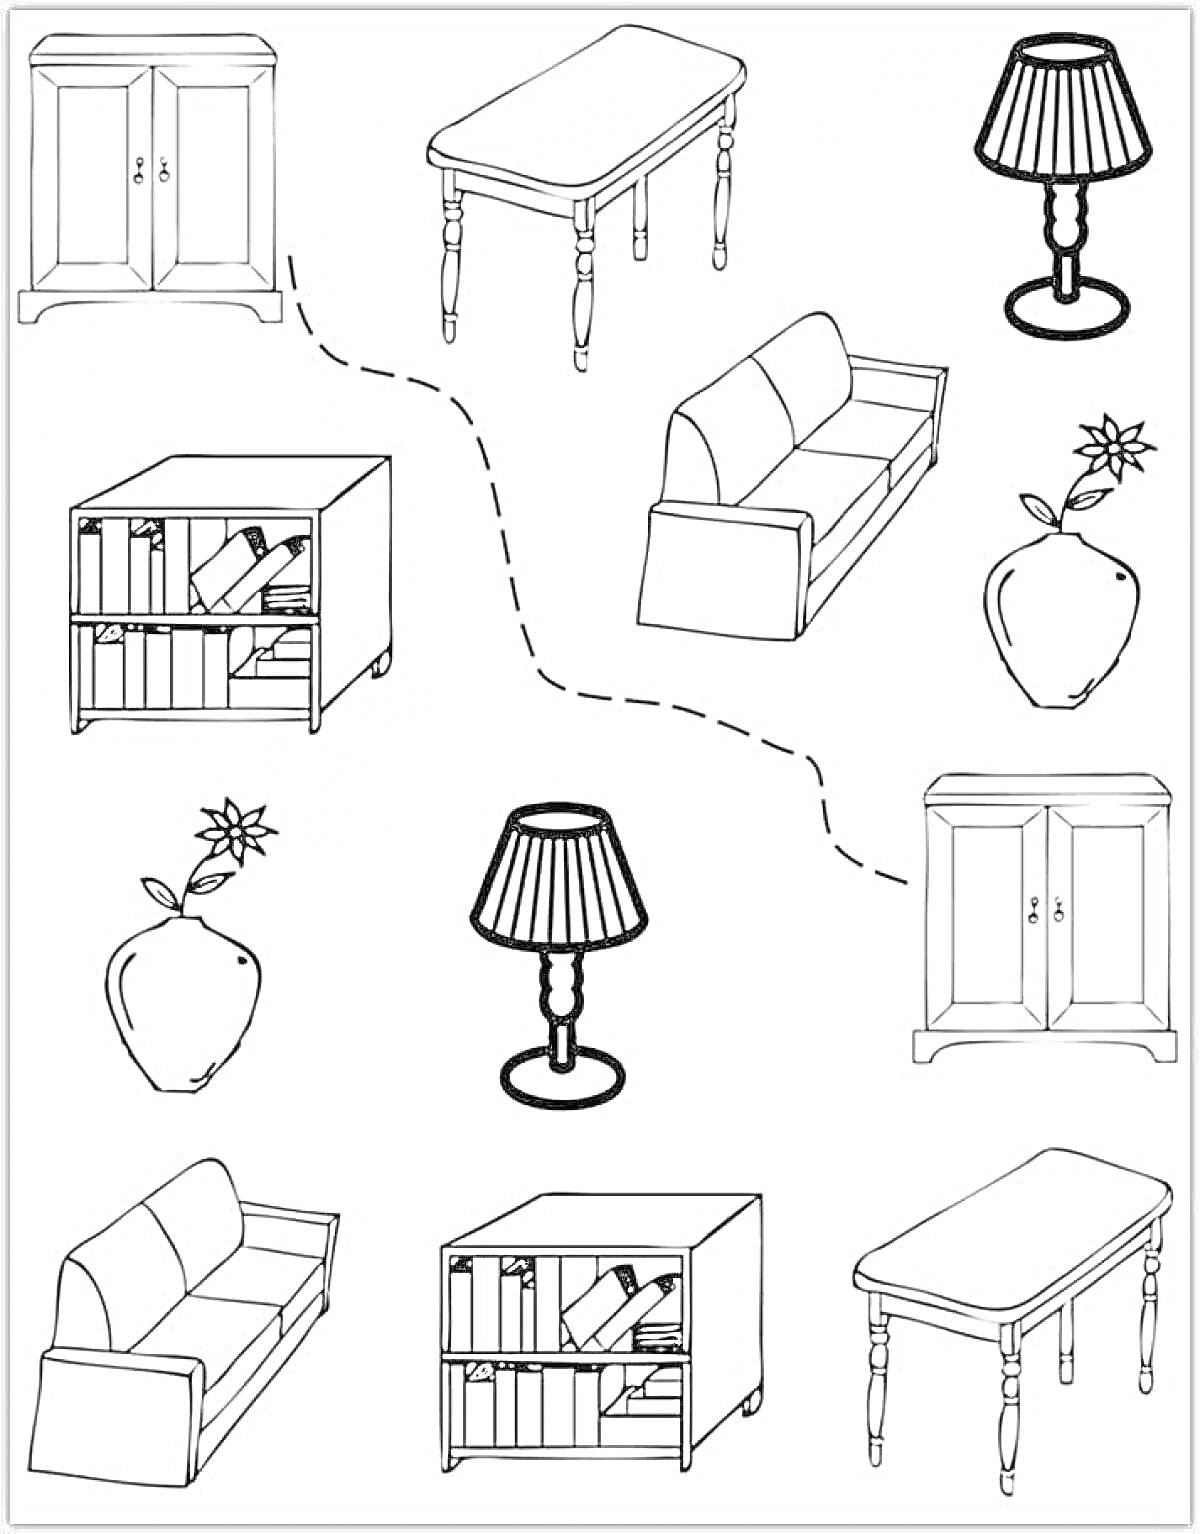 Раскраска Мебель и предметы интерьера (шкаф, стол, лампа, диван, книжный шкаф, цветок в вазе)